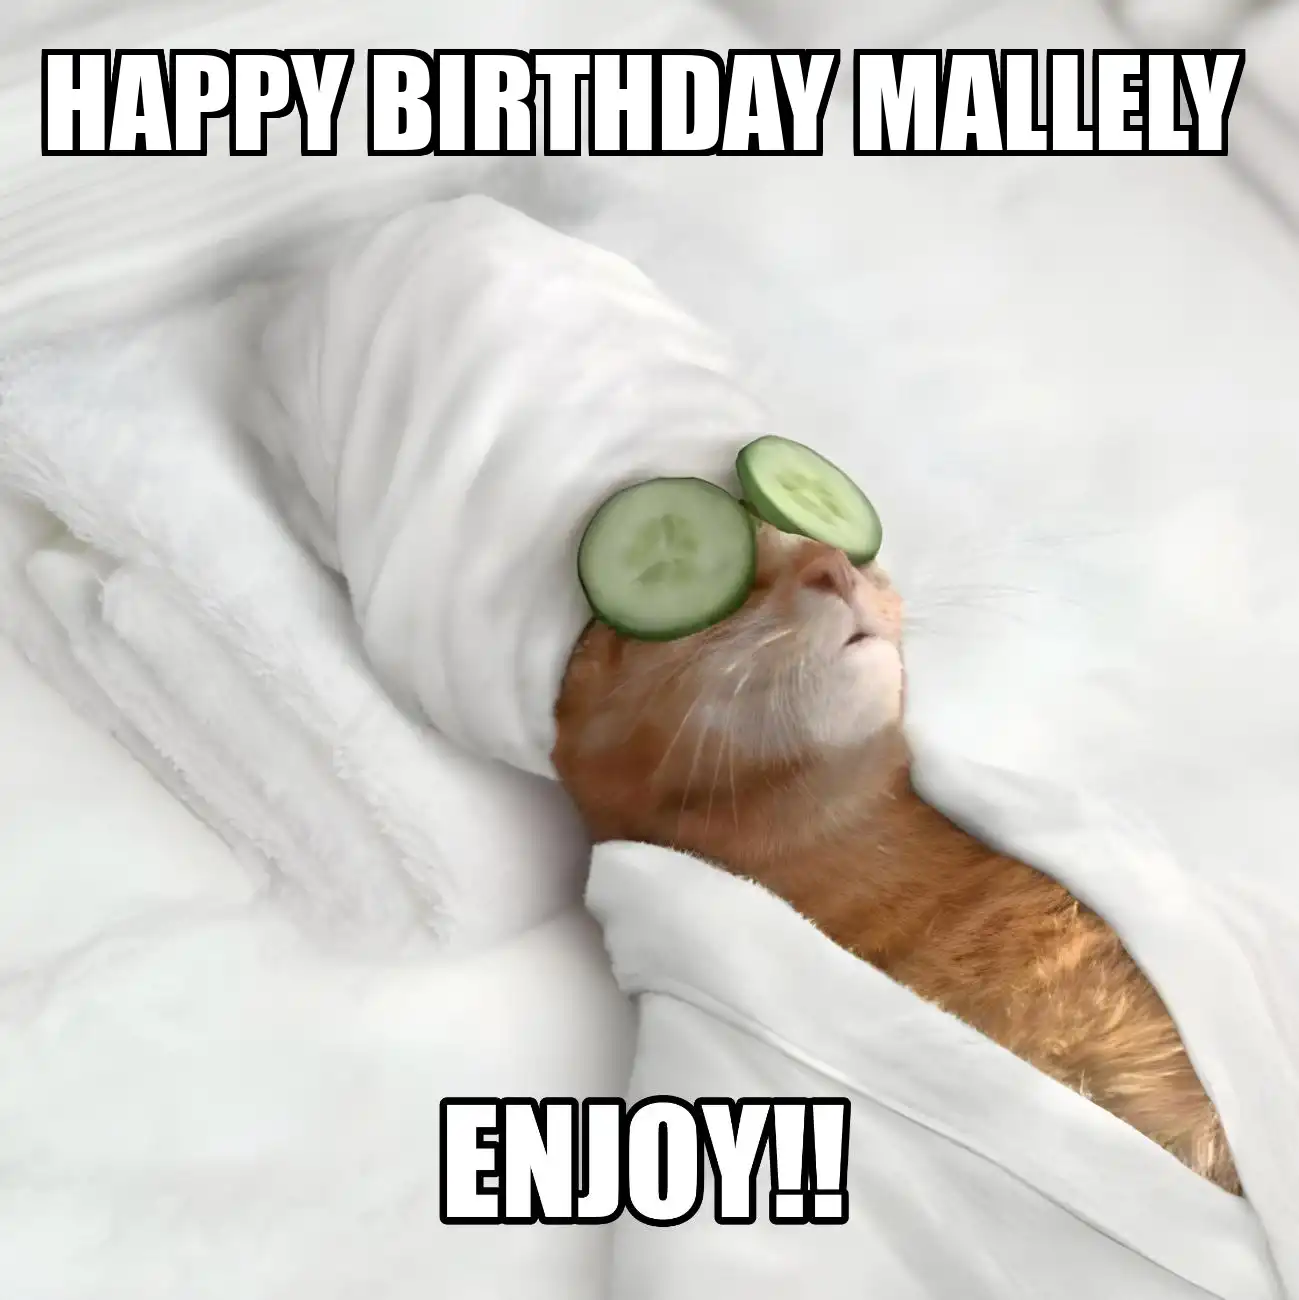 Happy Birthday Mallely Enjoy Cat Meme